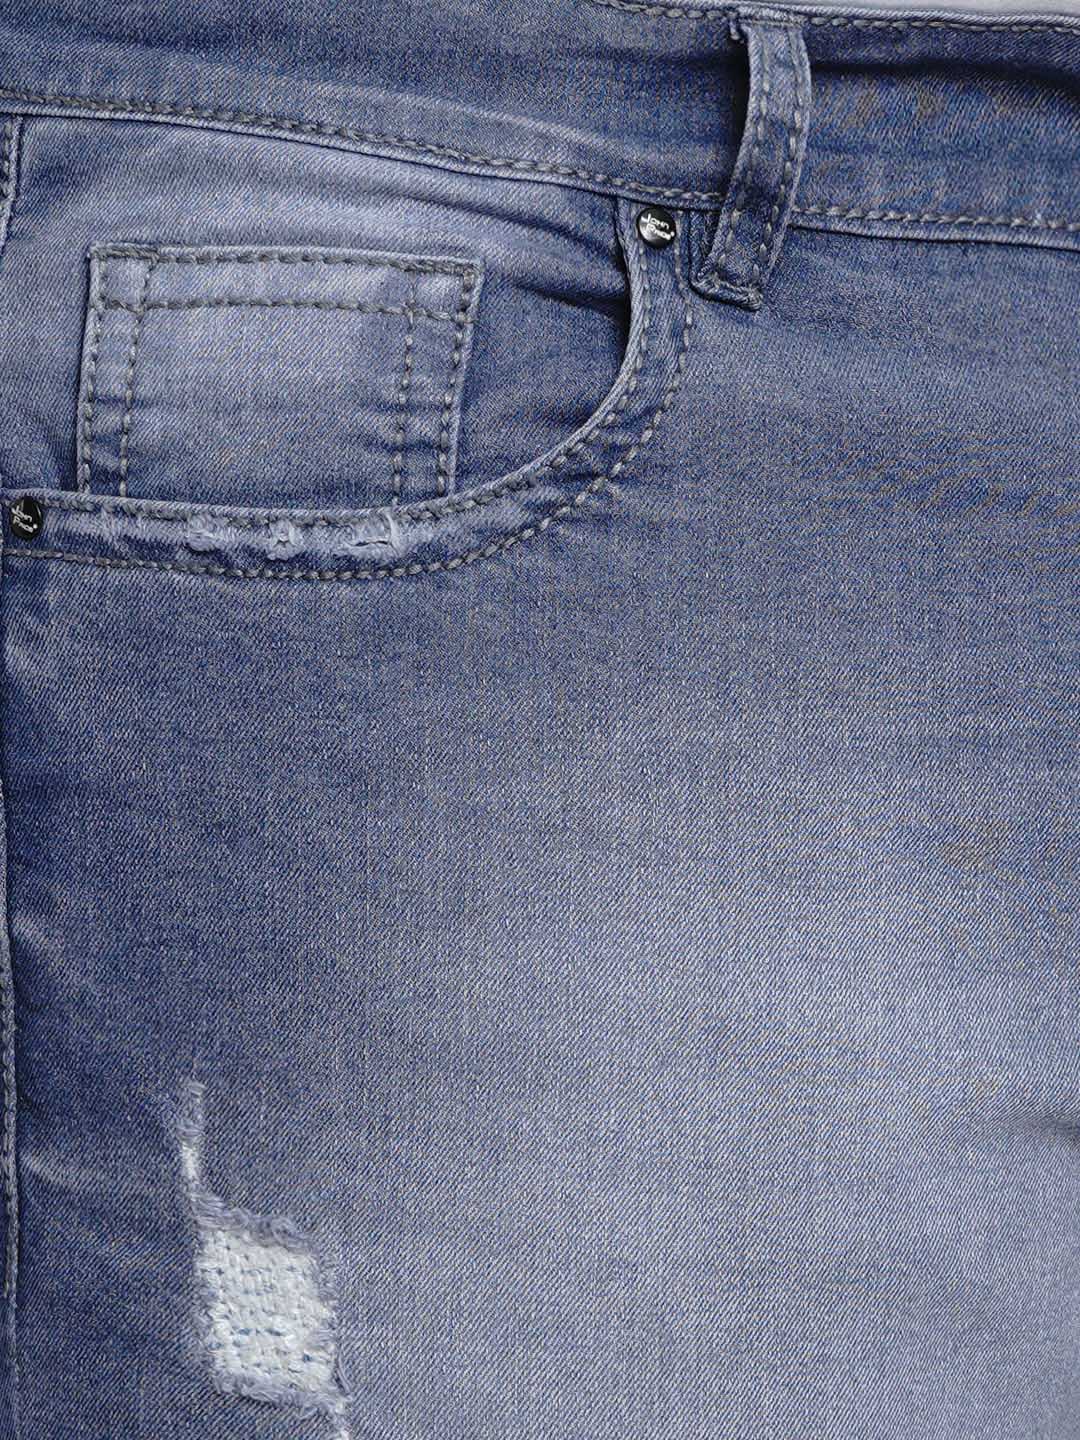 affordables/jeans/BEPLJPJ2005/bepljpj2005-5.jpg